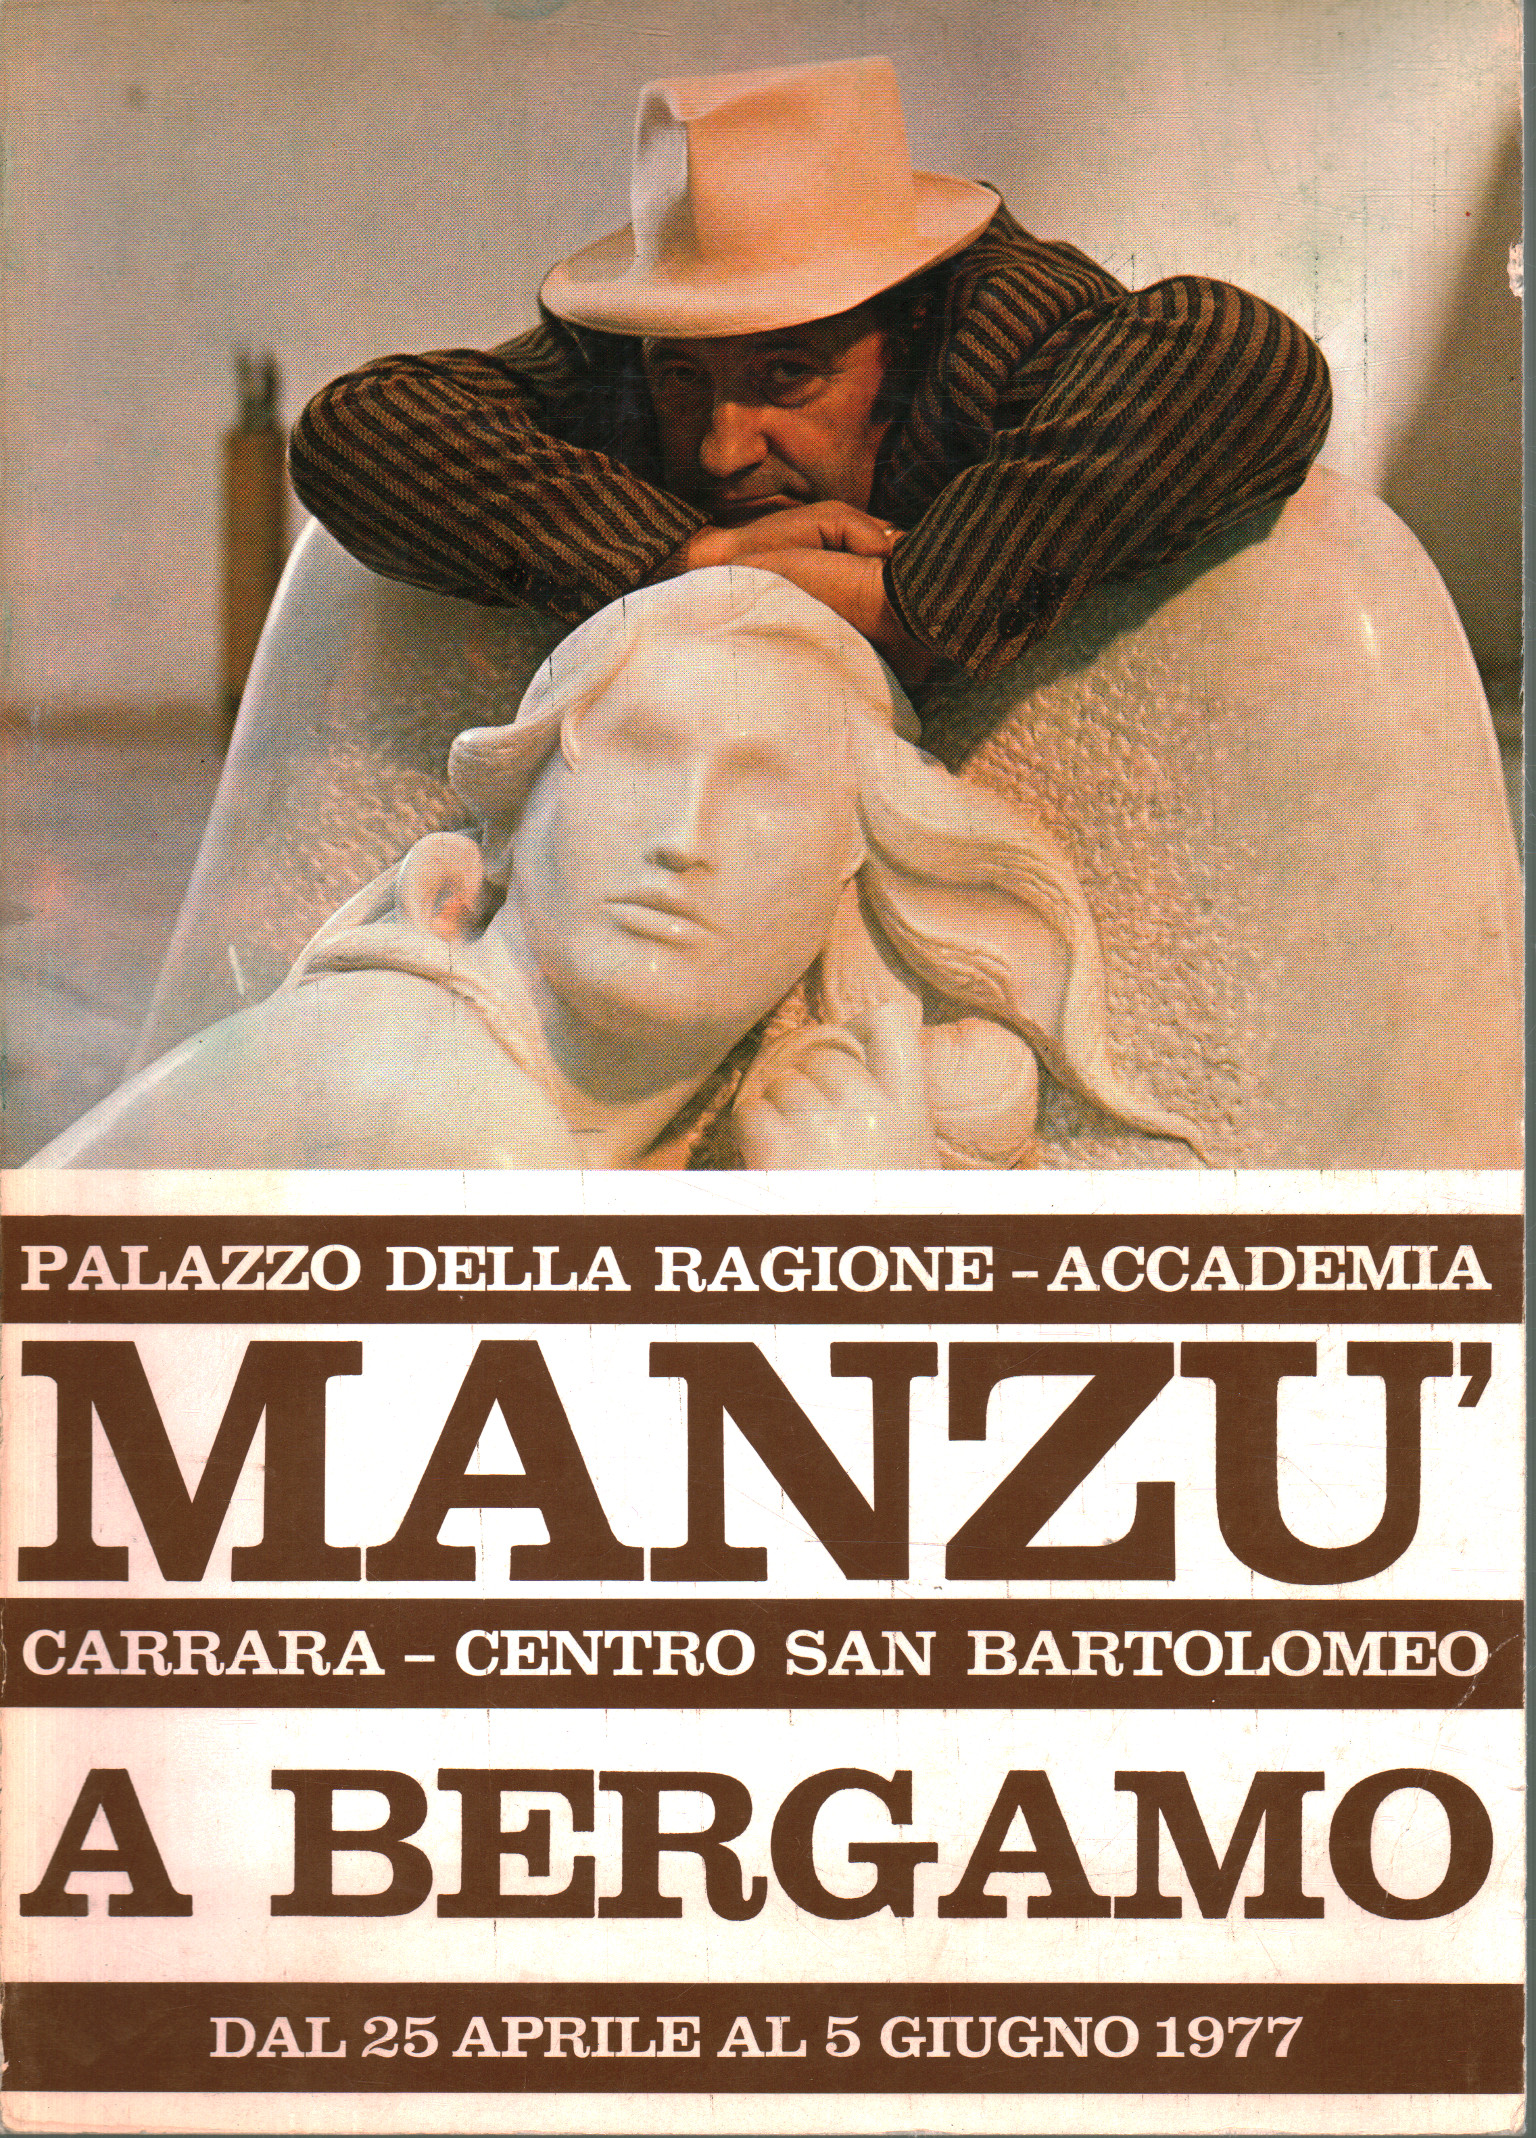 Manzù en Bergamo, A.A.V.V.